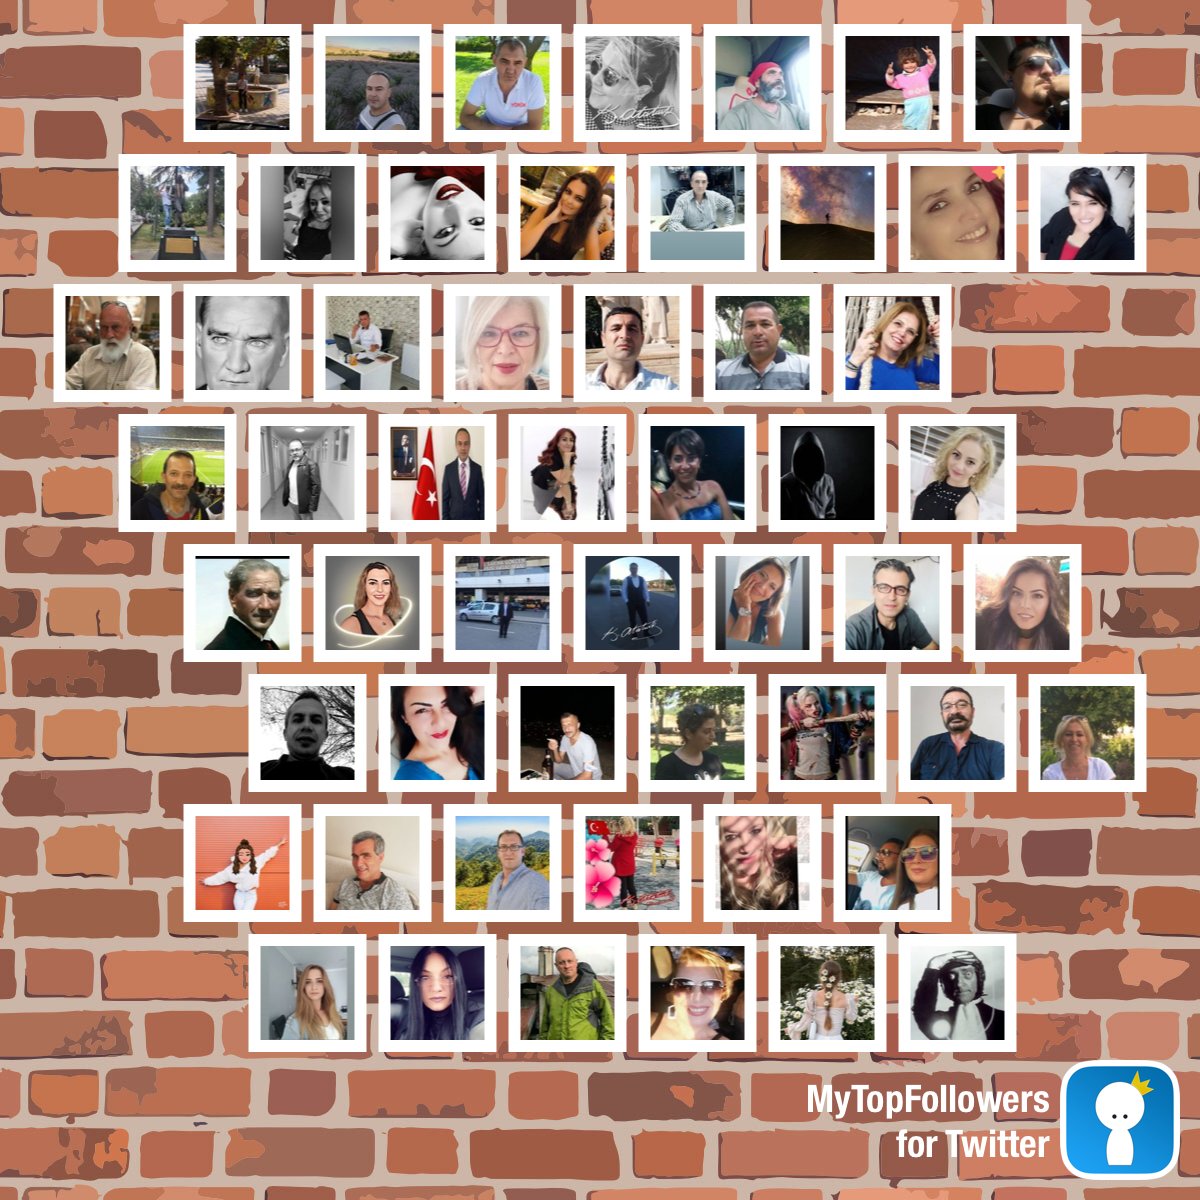 Dostlar meclisi 
#mytopfollowers #WorldPhotoDay dixapp.com/mytopfollowers… ile Kendini görürsen retweetle